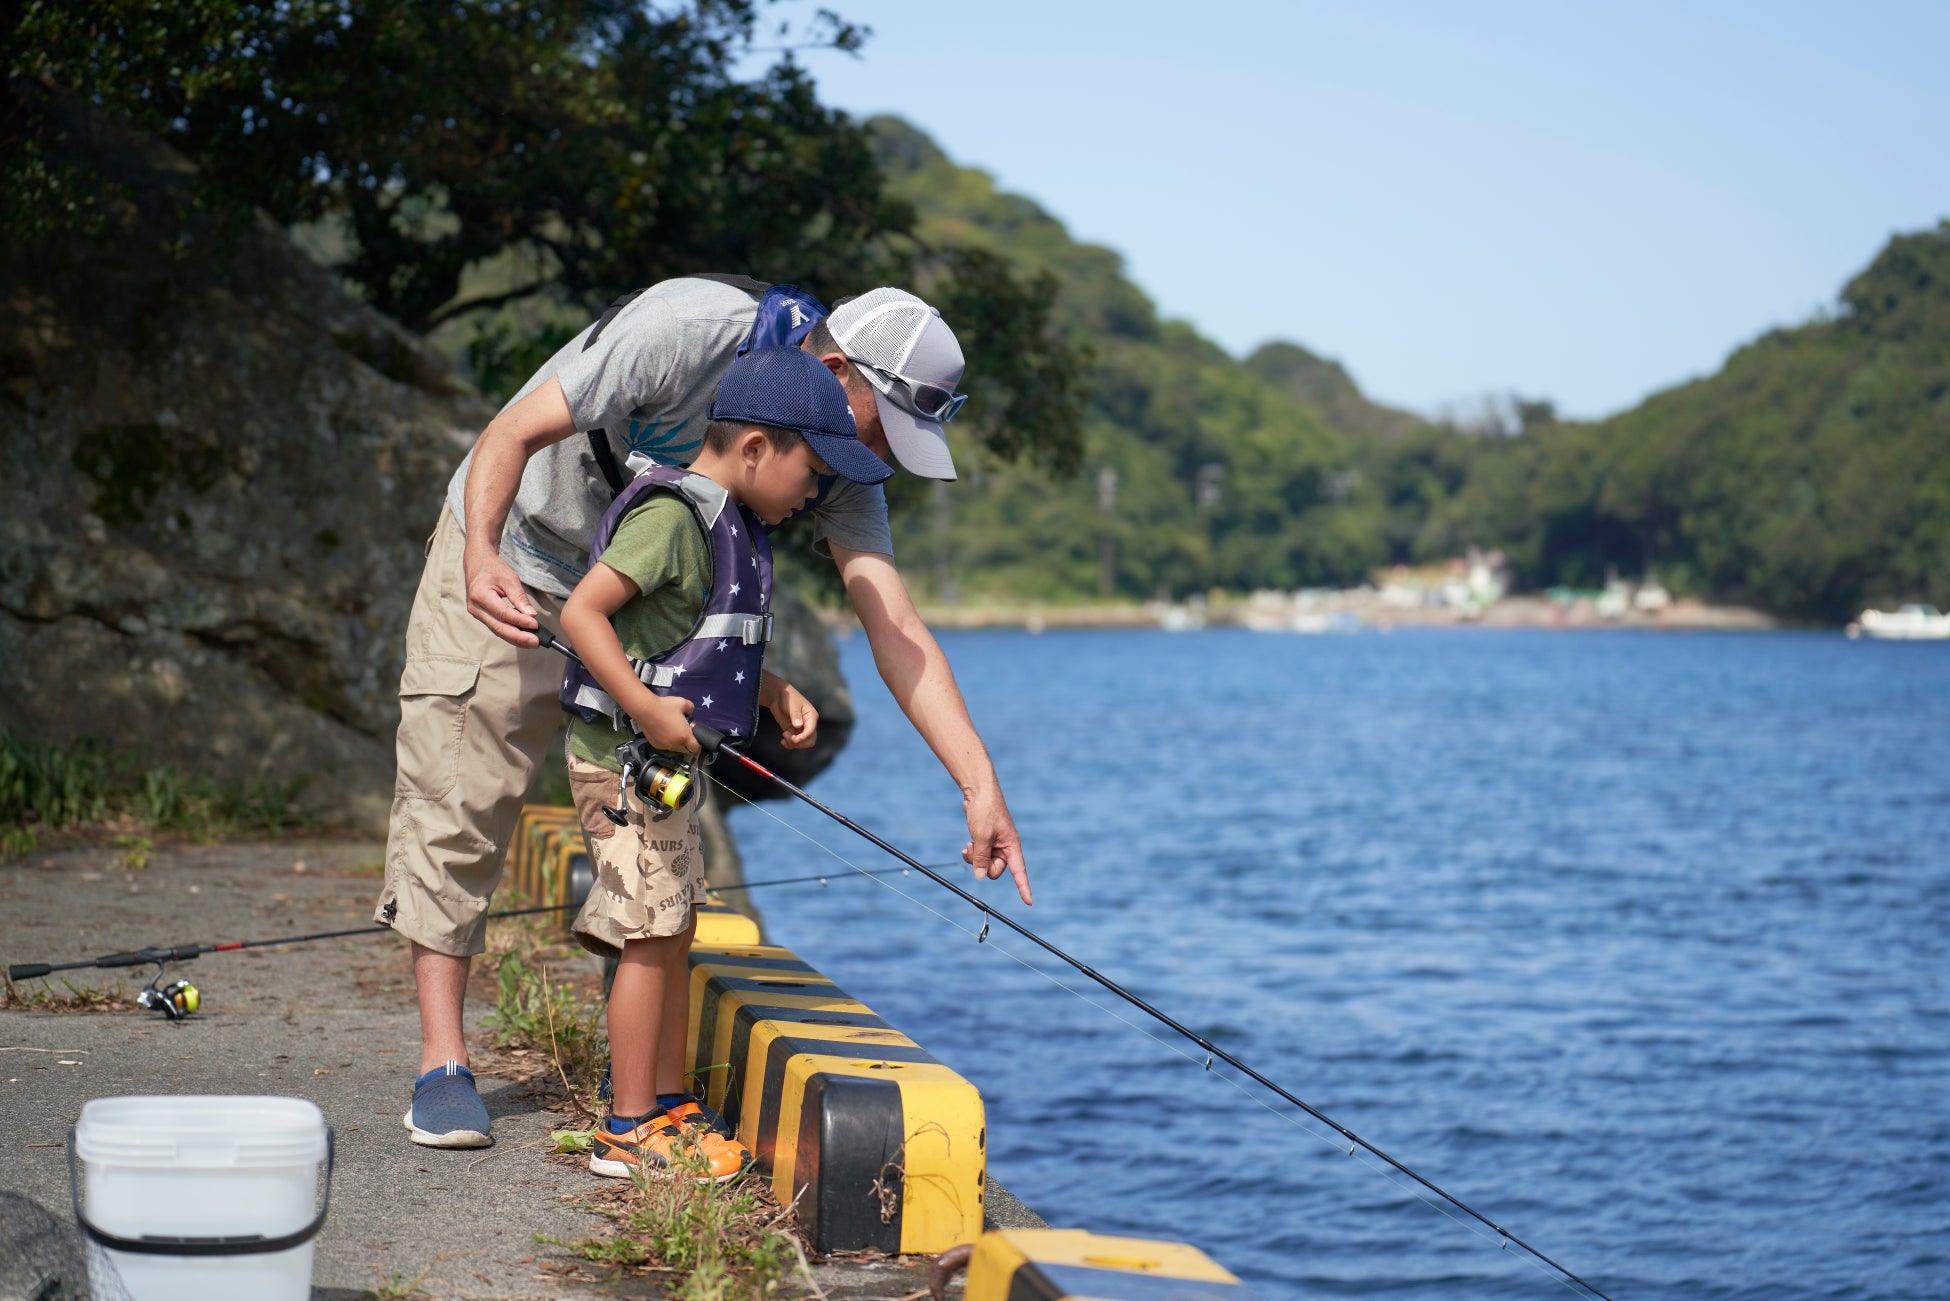 大切な釣り場を守る仕組み「海釣りGO」田子漁港トライアルが本日7/31よりサービスイン。フォトスポット、レンタル釣具、イベント開催など盛りだくさん。田子漁港へ、海釣りGO！のサブ画像2